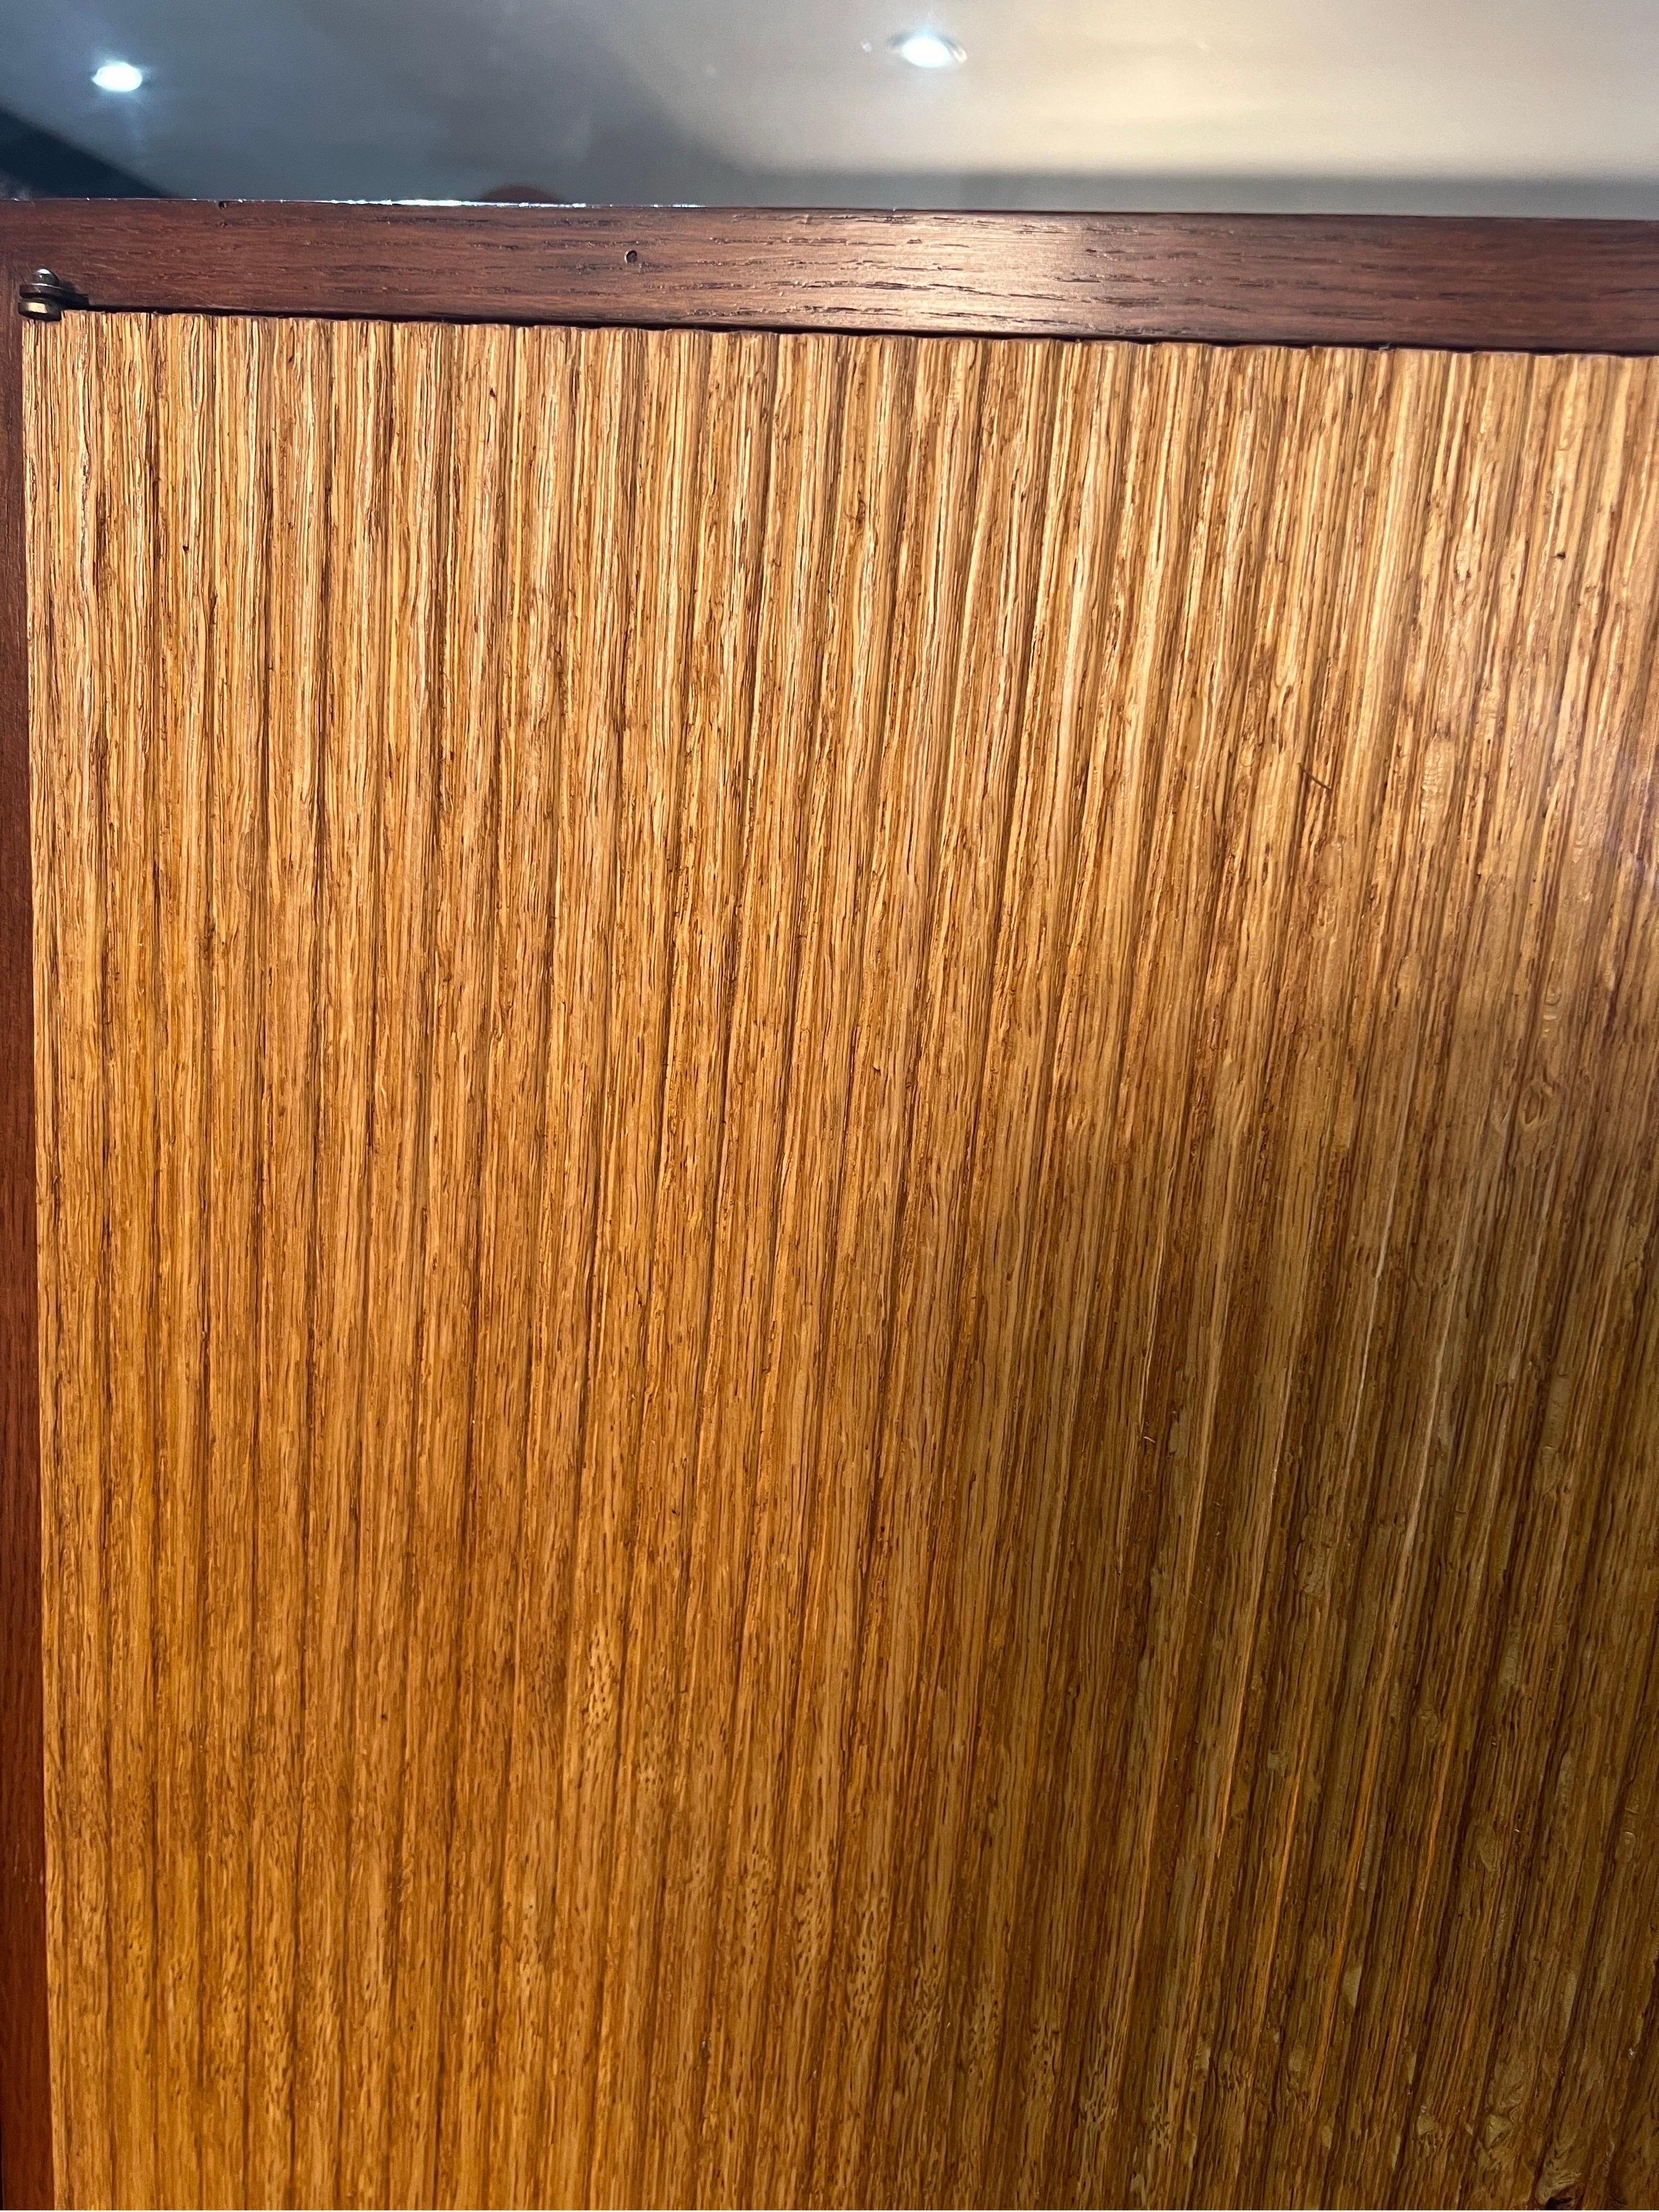 Une extraordinaire paire d'armoires italiennes à portes cannelées. Fabriqué en bois de hêtre et entouré de châtaignier, chaque meuble contient 3 étagères à l'intérieur. Un bel exemple de l'artisanat italien des années 1940. 
D'autres photos sont